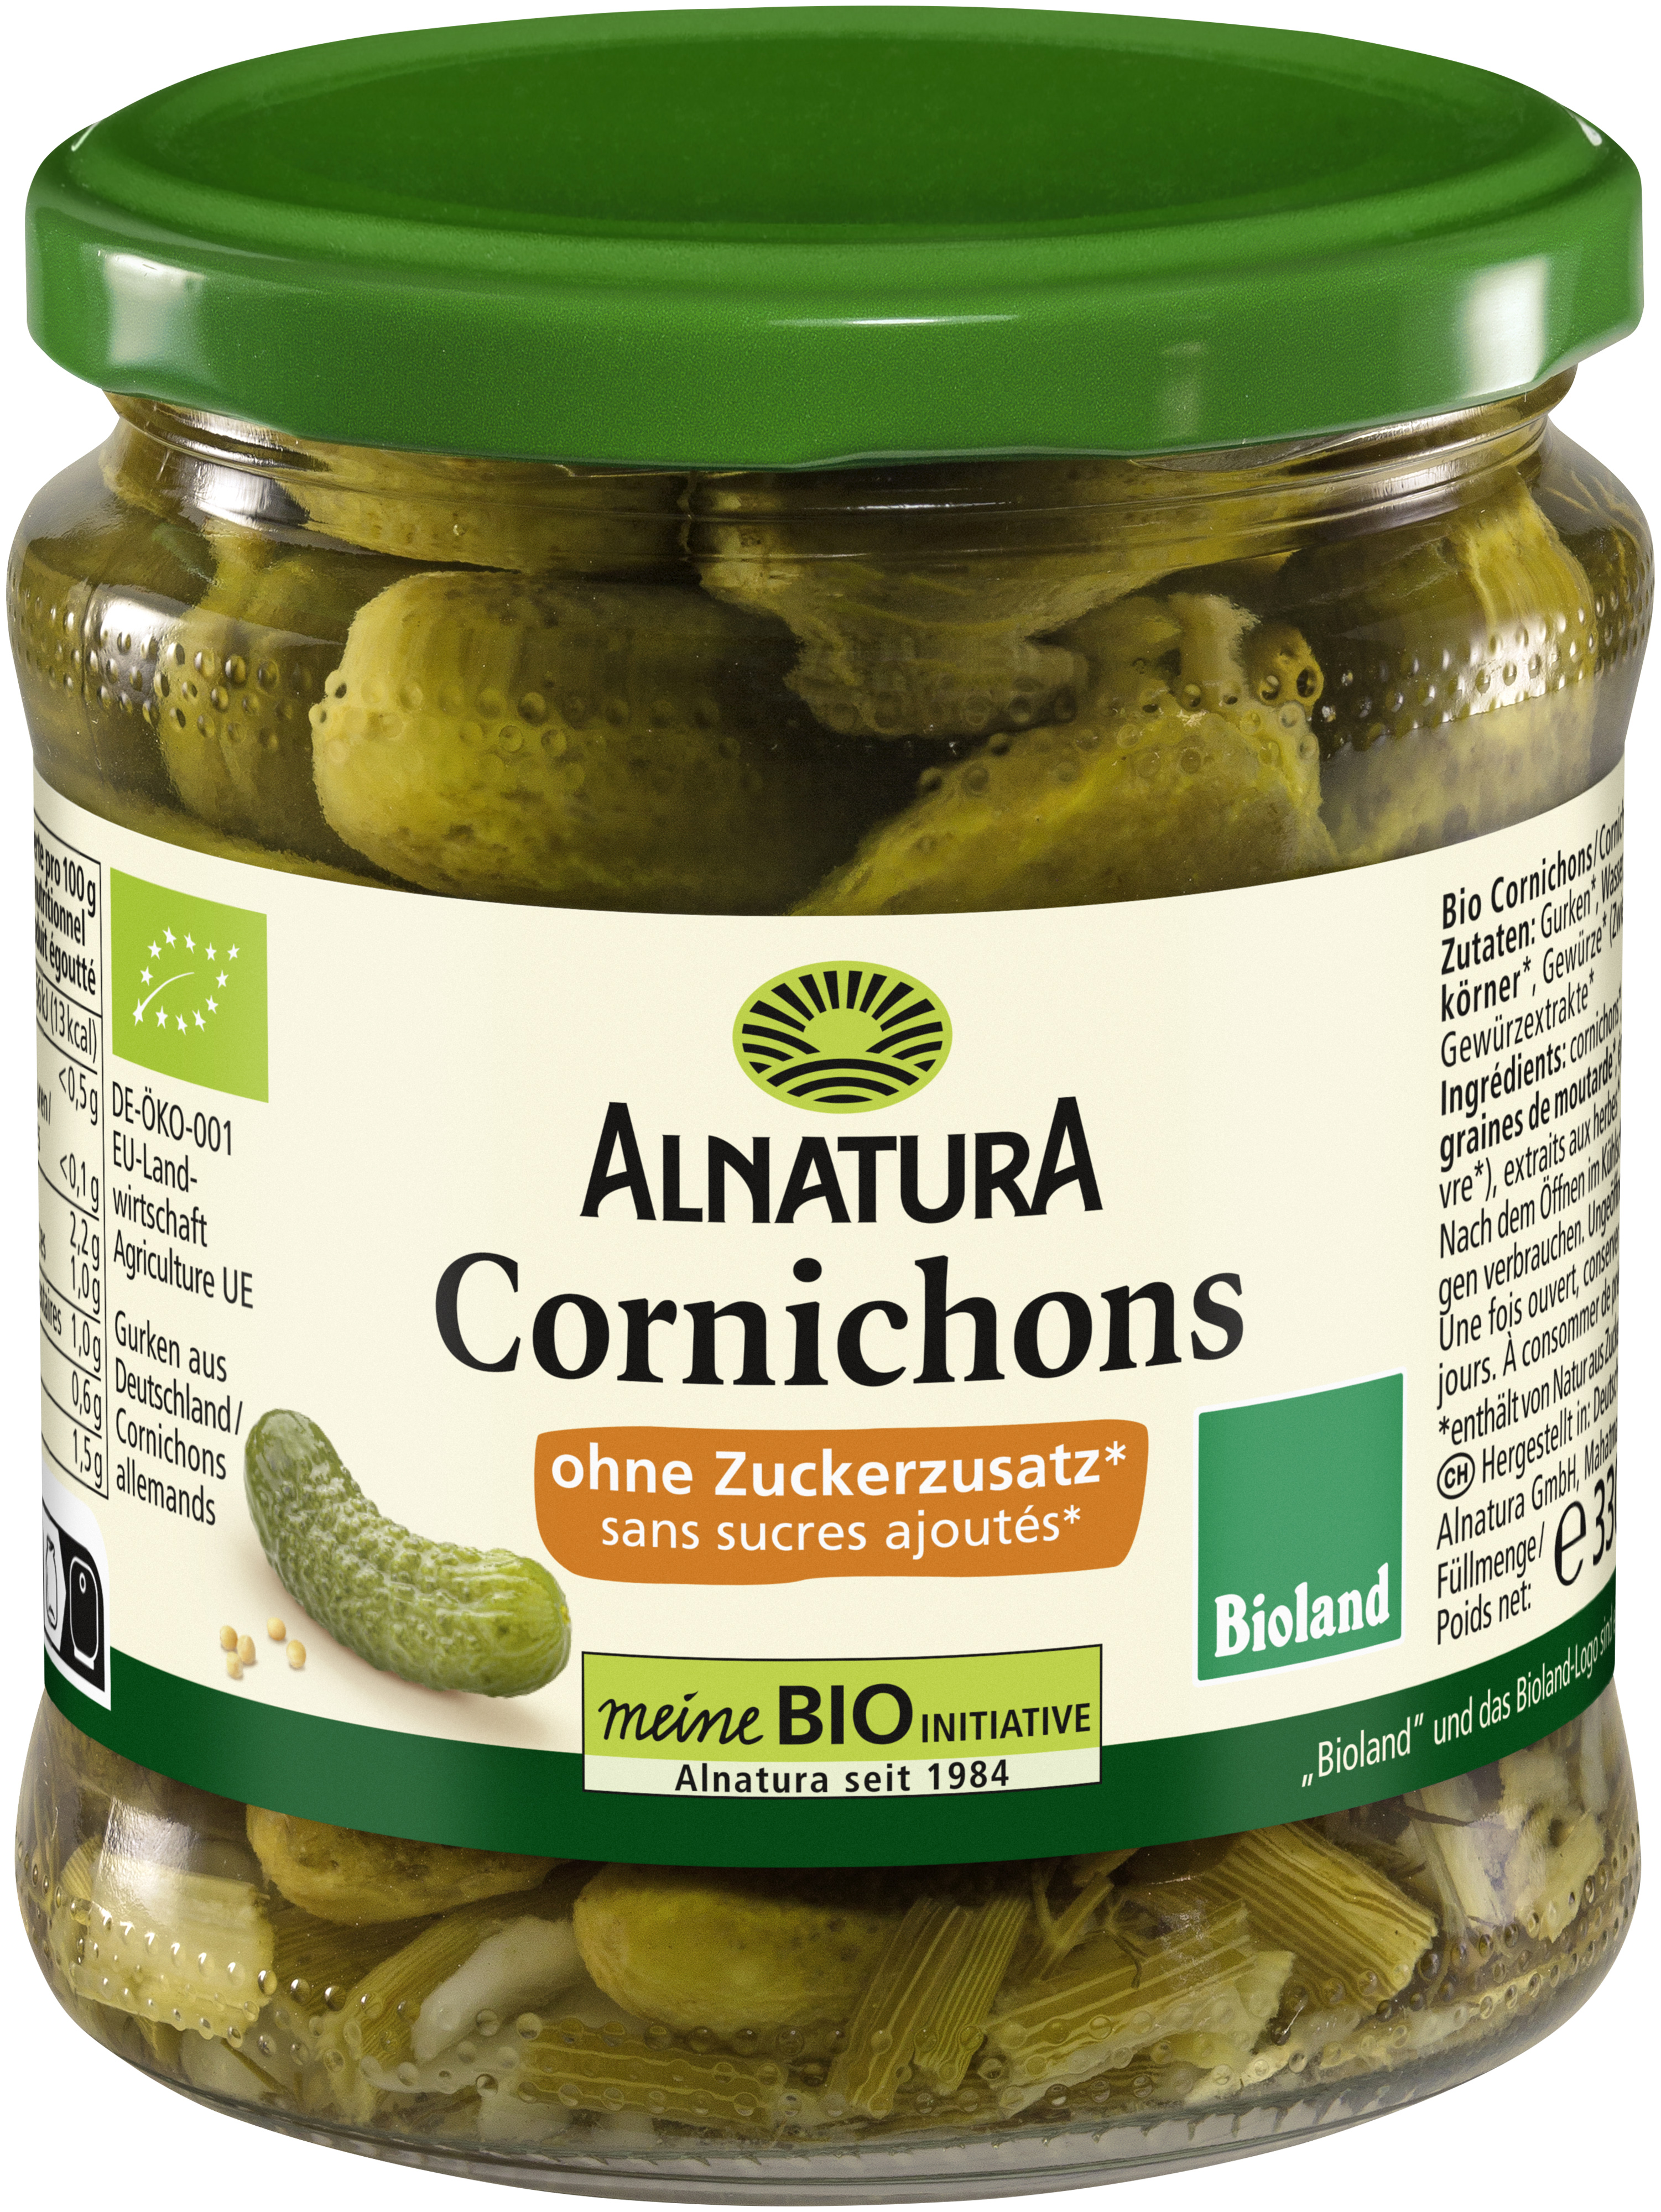 Cornichons ohne Zuckerzusatz (330 g) in Bio-Qualität von Alnatura